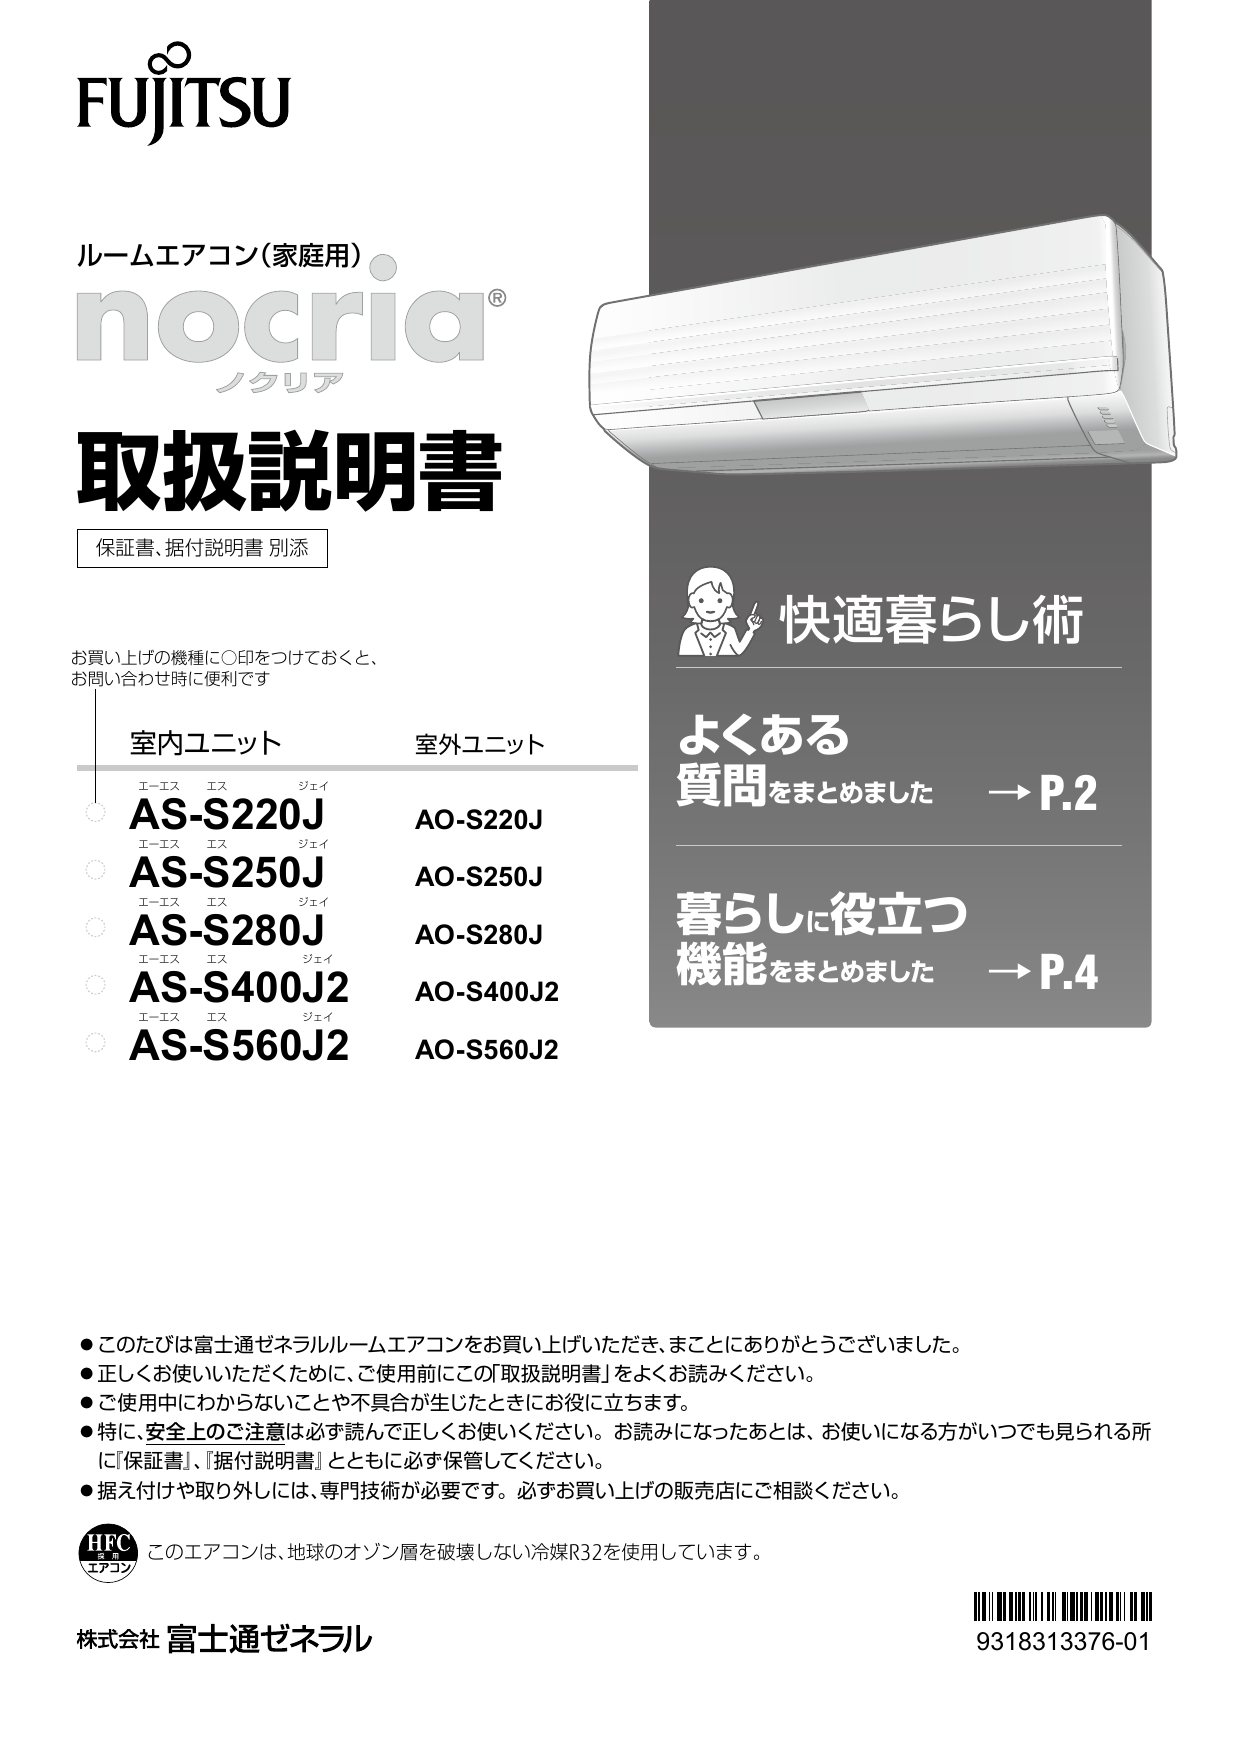 史上一番安い 富士通 エアコン 4.0kw AS-S400J2 (32197) www